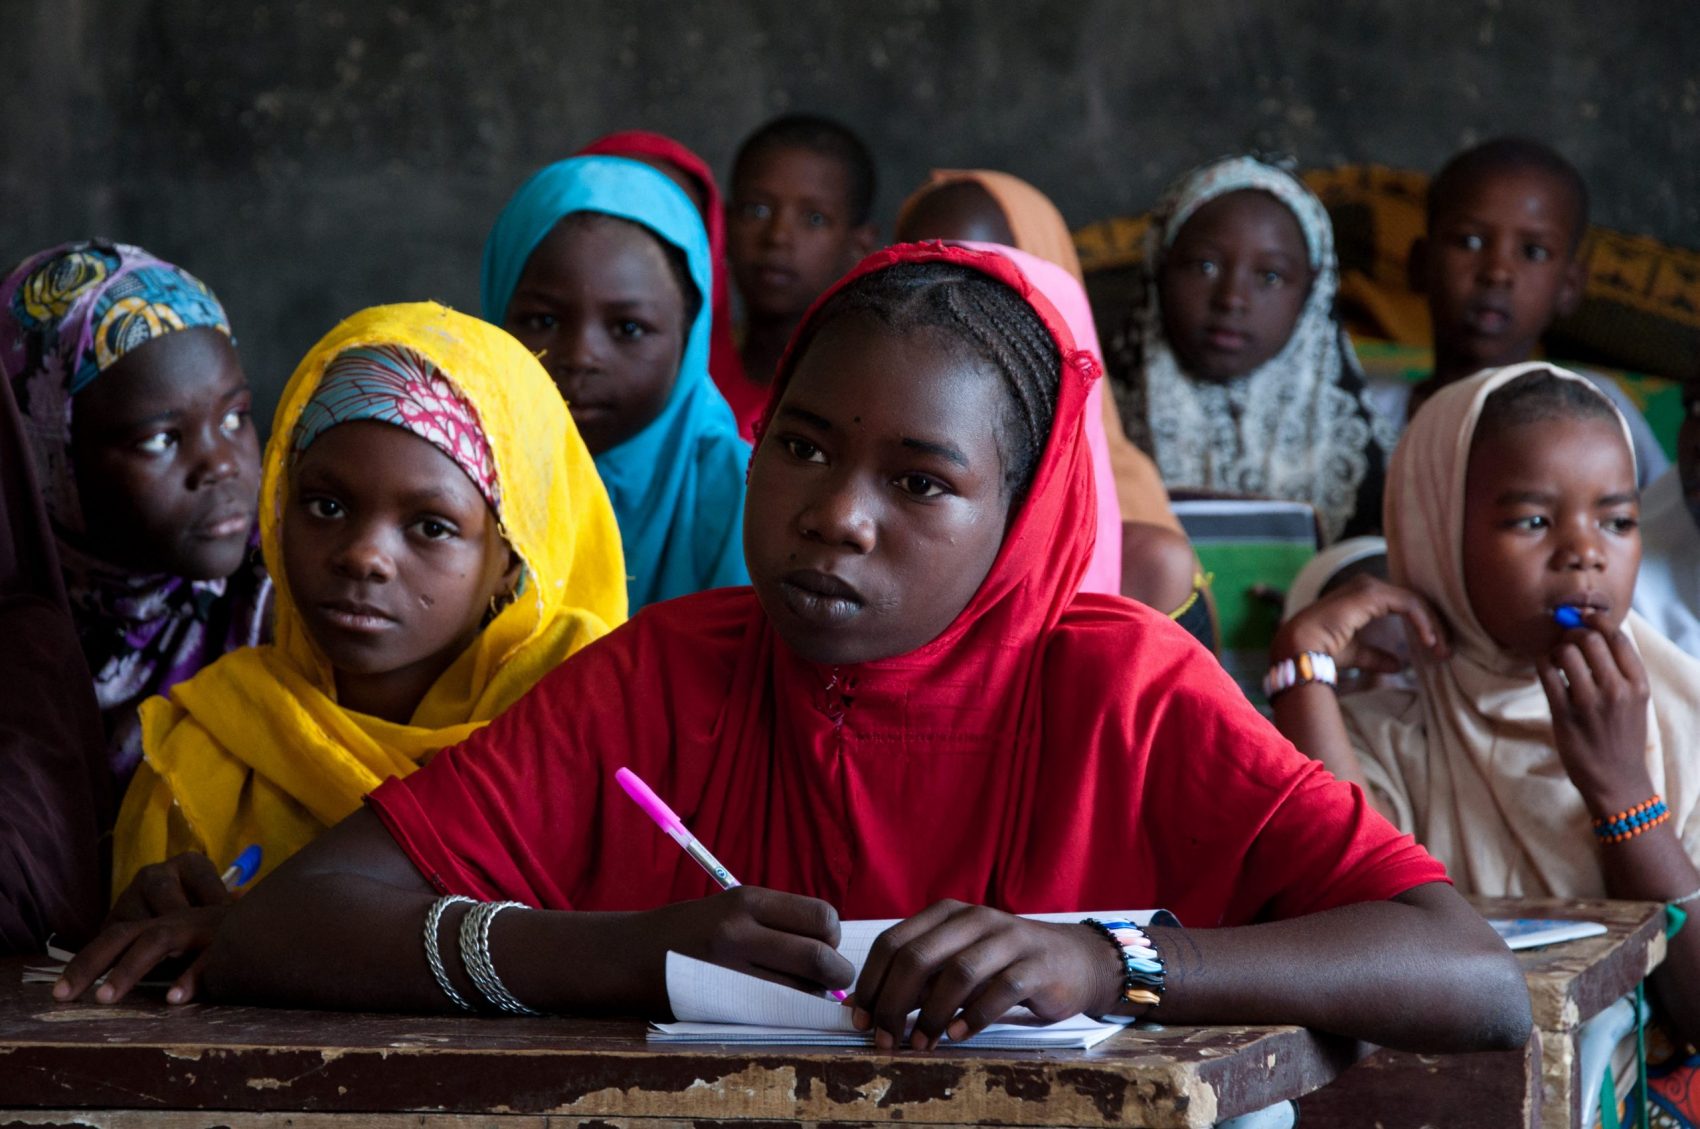 Meninas na escola na cidade de Diffa, em Níger. O país tem um dos piores índices de desenvolvimento humano do mundo. Foto Morgane Wirtz/Hans Lucas via AFP